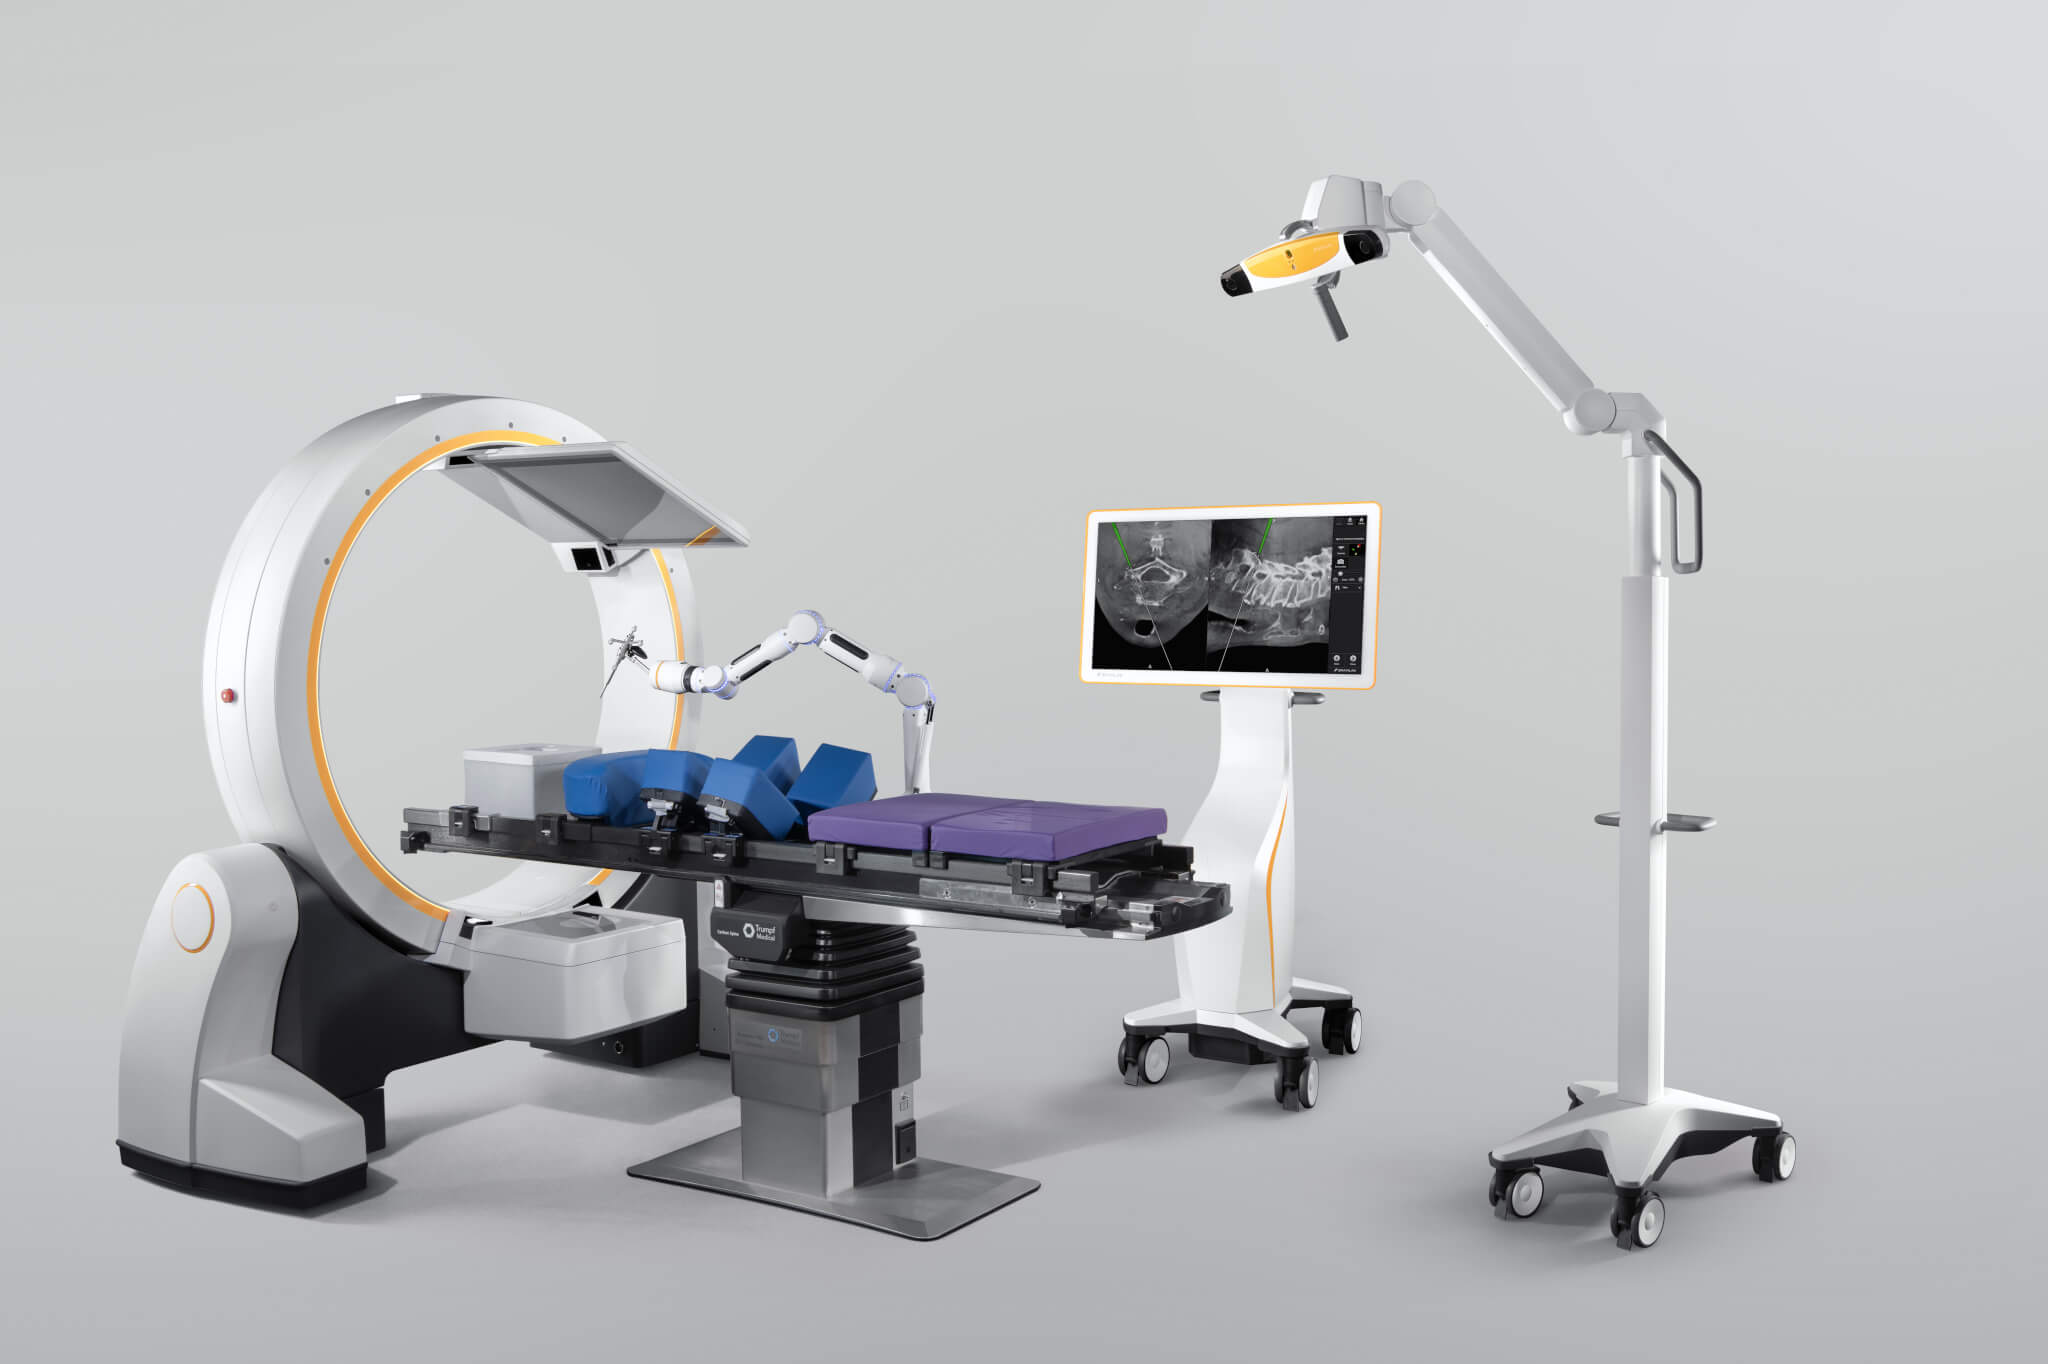 Die Navigationssoftware für Wirbelsäulenchirurgie bildet die Basis für die Digitalisierung des gesamten Wirbelsäuleneingriffs